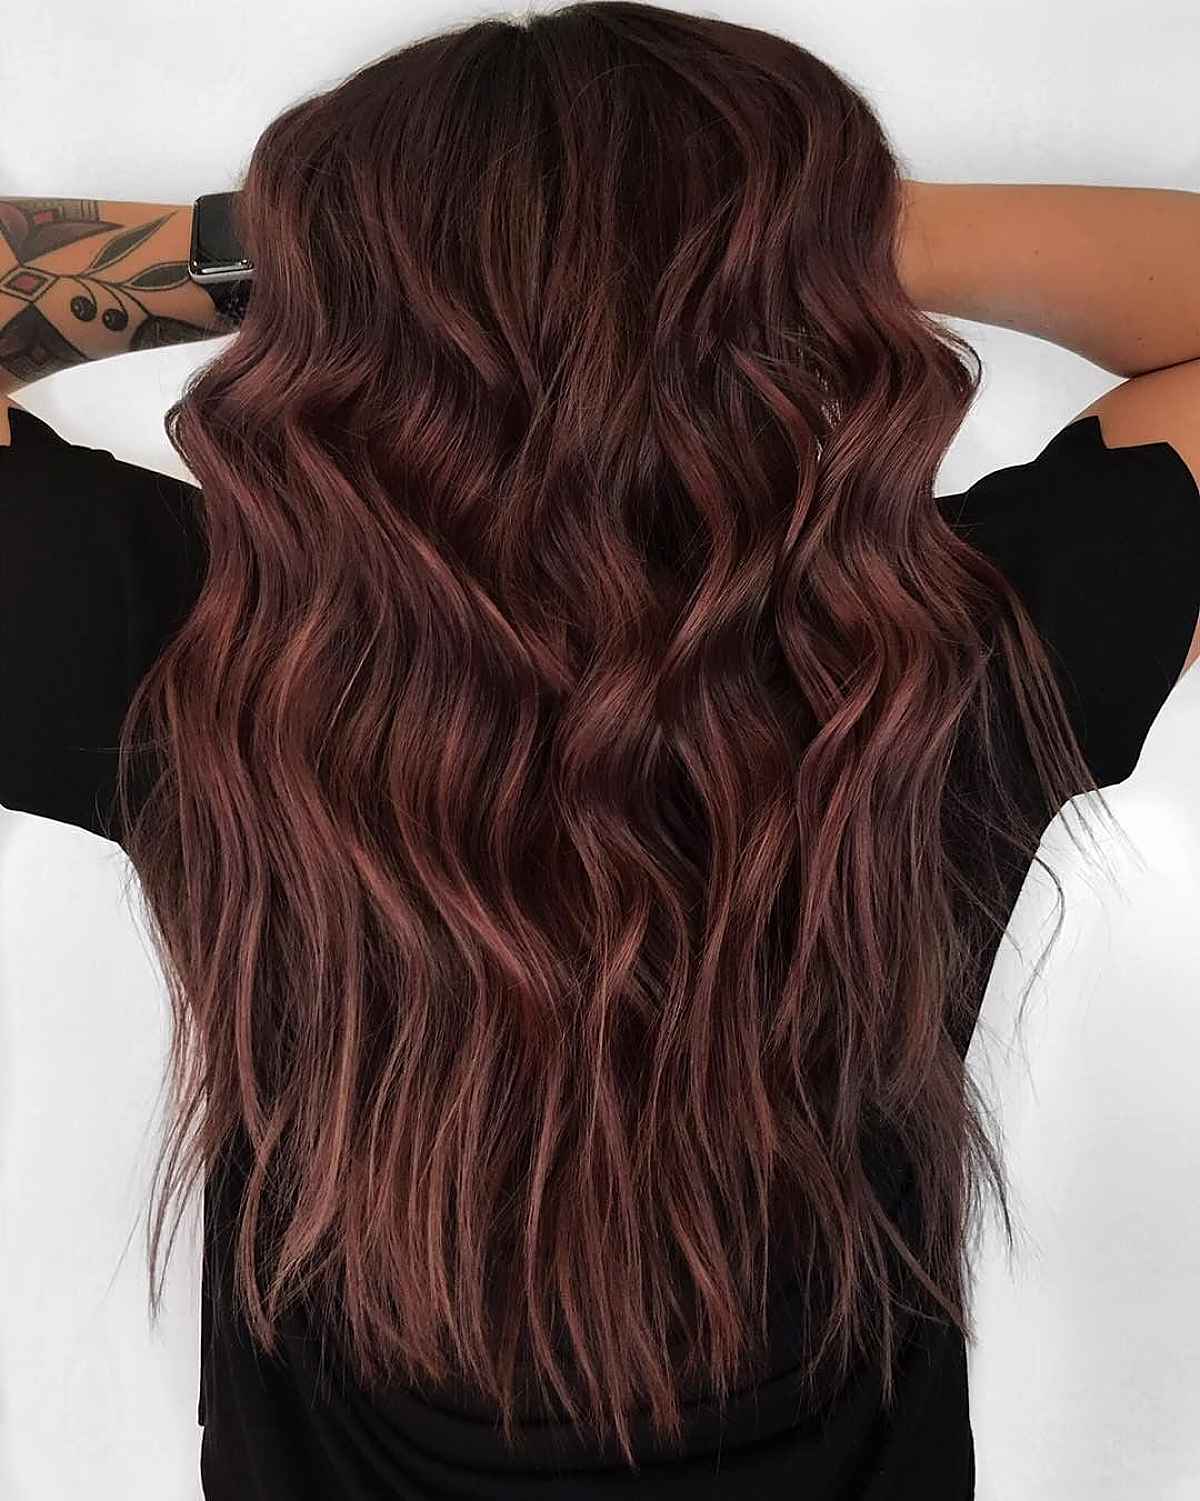 rich deep burgundy hair color